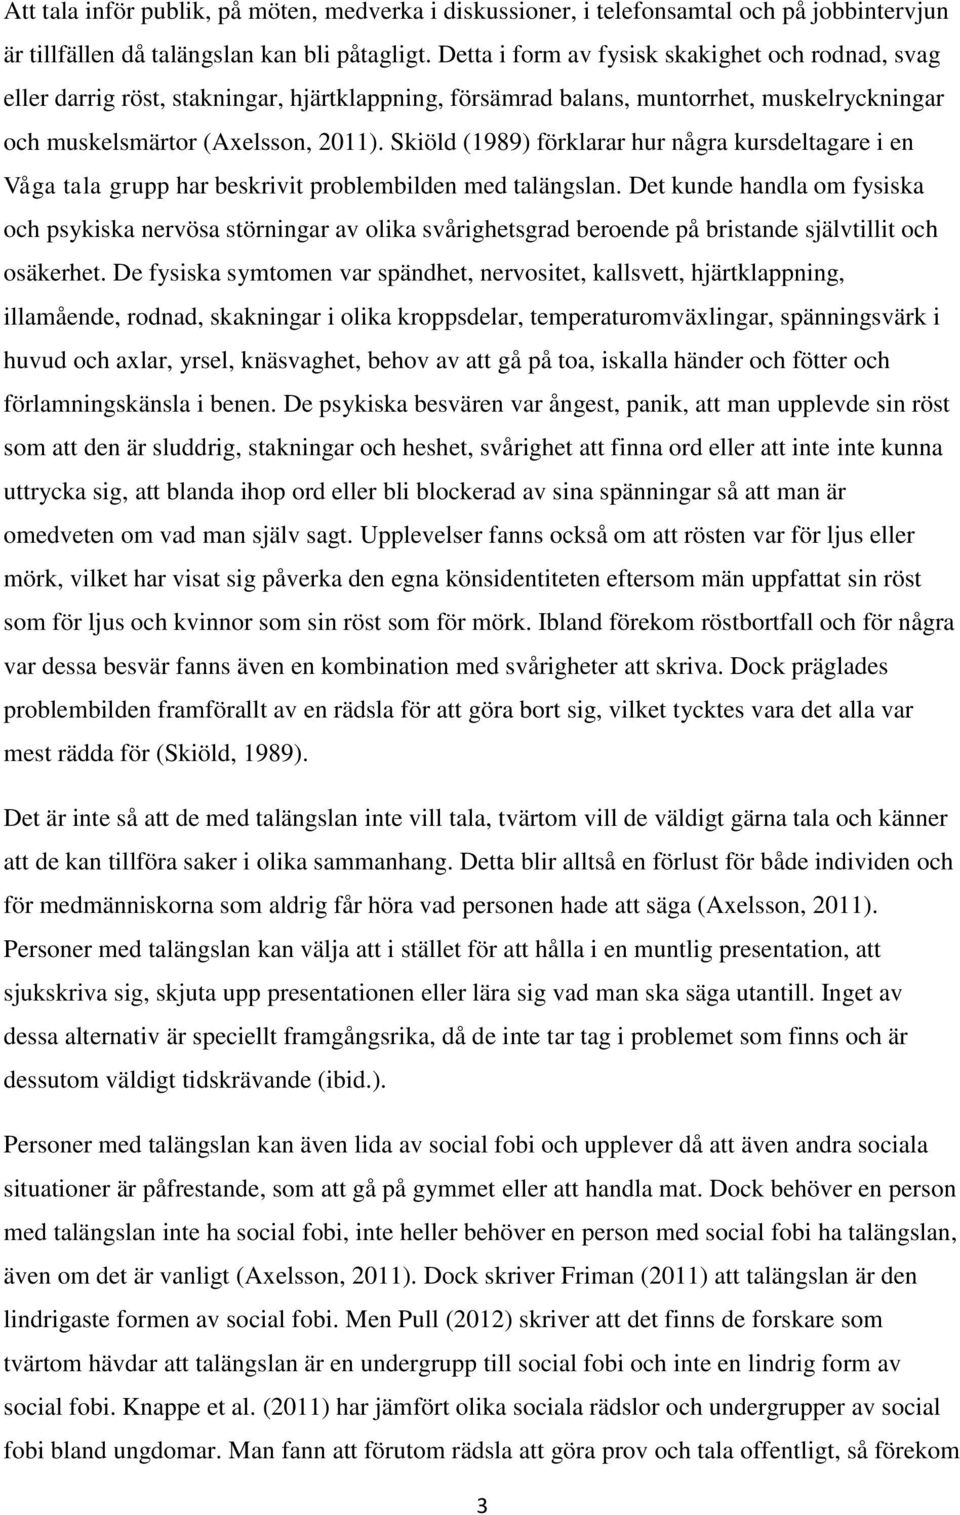 Skiöld (1989) förklarar hur några kursdeltagare i en Våga tala grupp har beskrivit problembilden med talängslan.